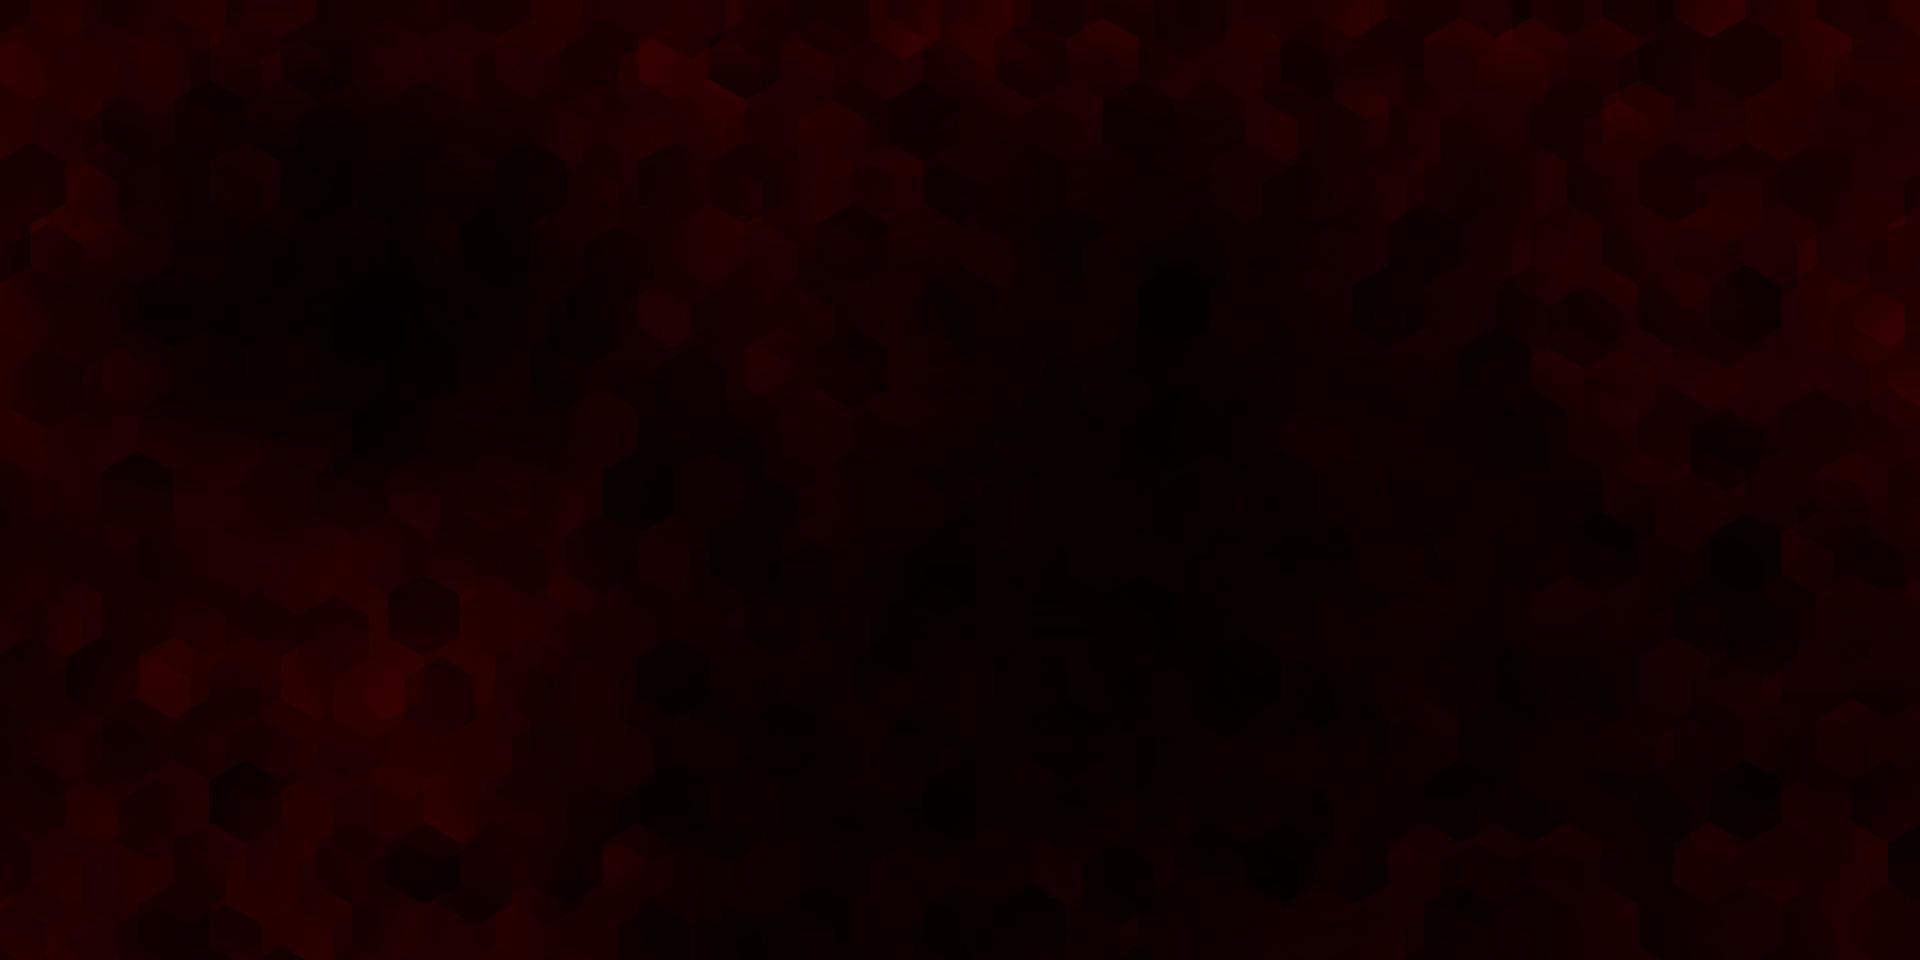 patrón de vector rojo oscuro con hexágonos.